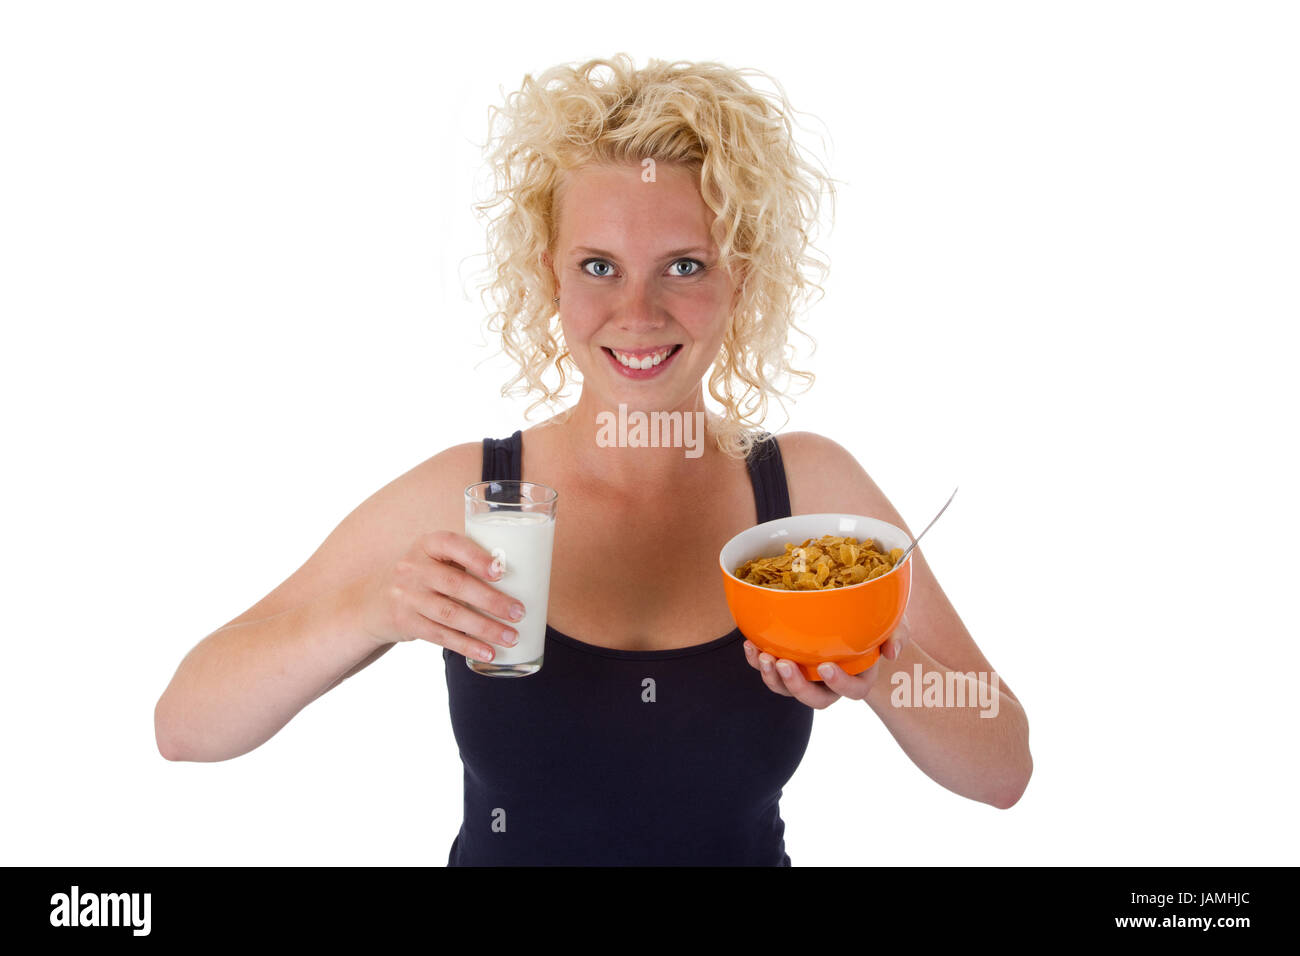 Junge Frau mit einem Glas Milch und einer Schale Cornflakes - freigestellt Stock Photo